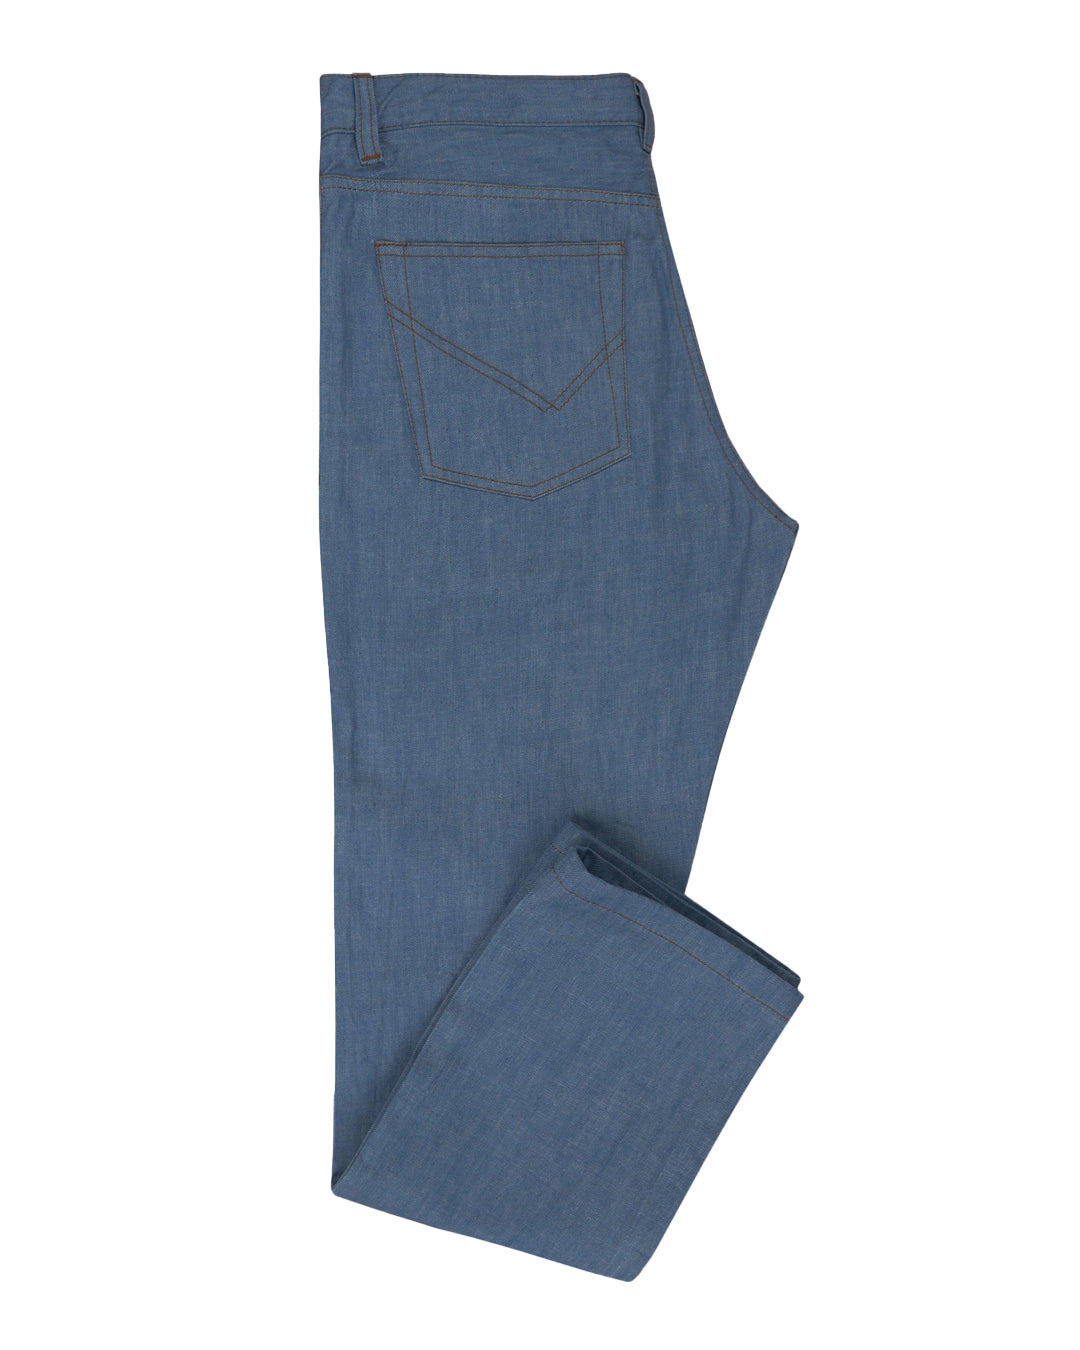 Side view of custom broken slub jeans for men by Luxire in light blue